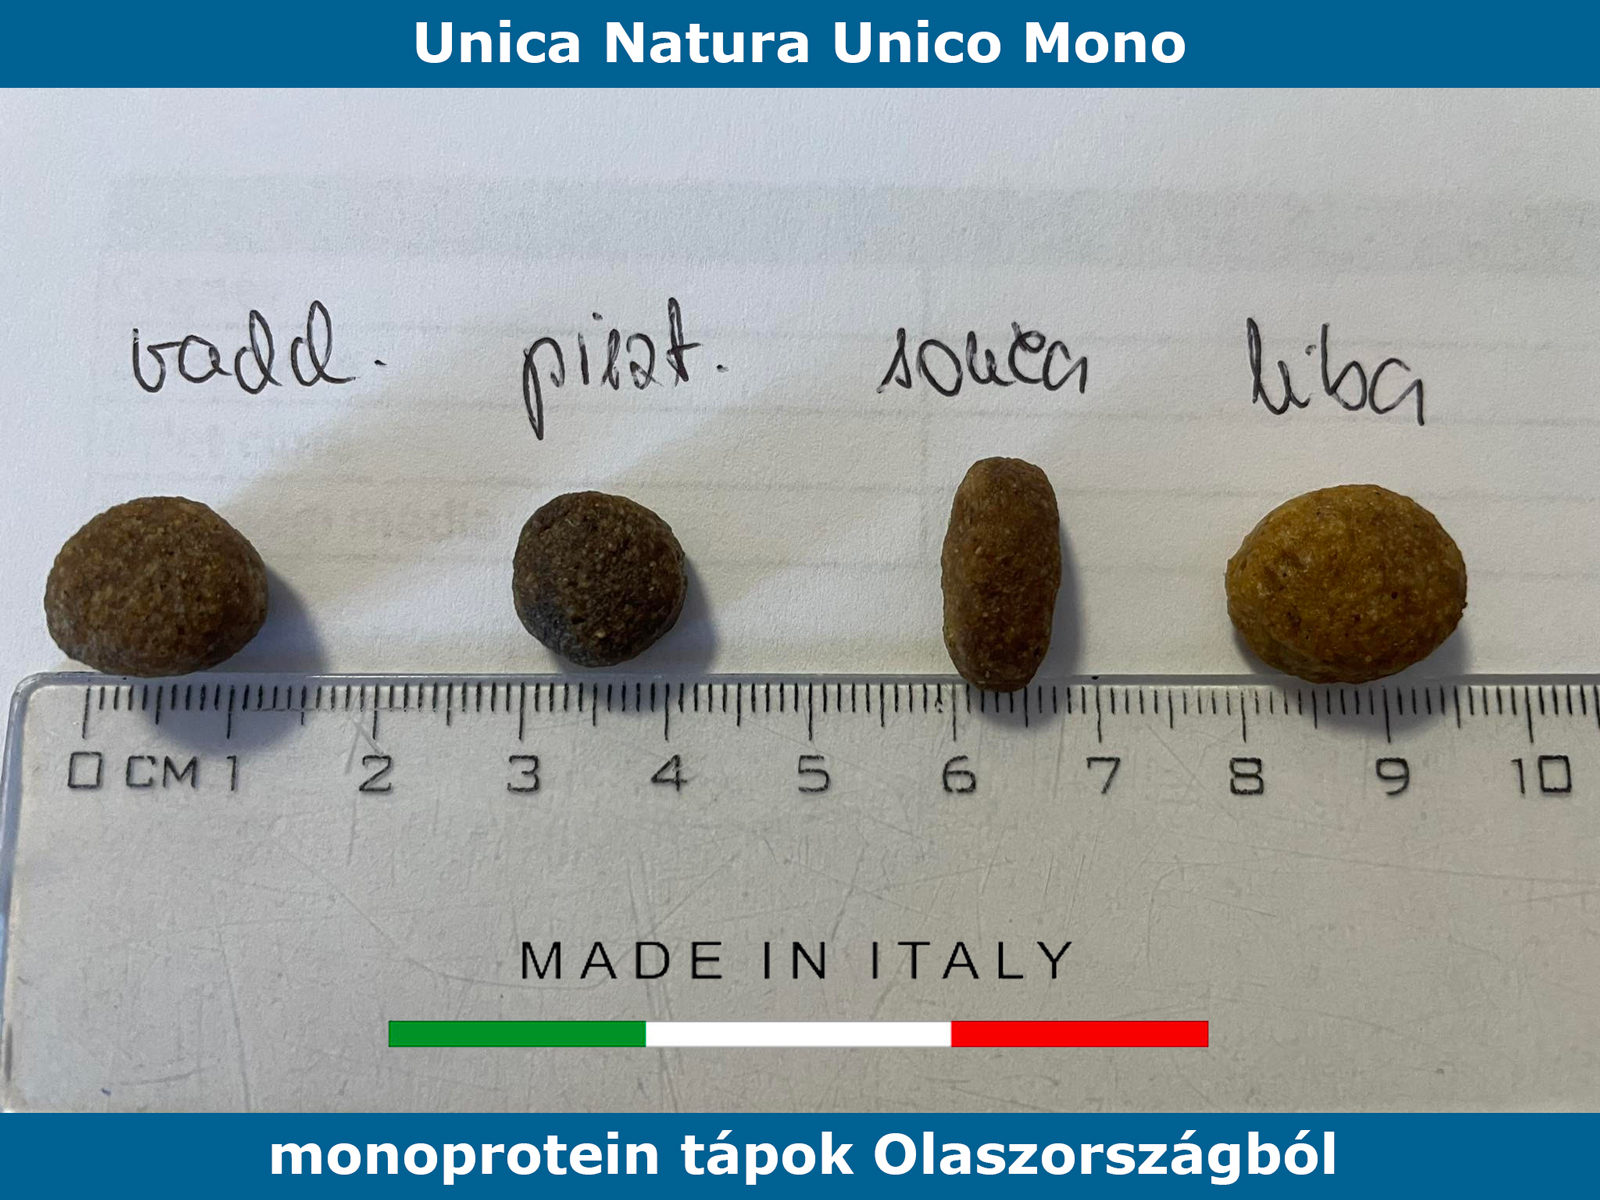 Unica Natura Unico Mono tápszemcse méretek